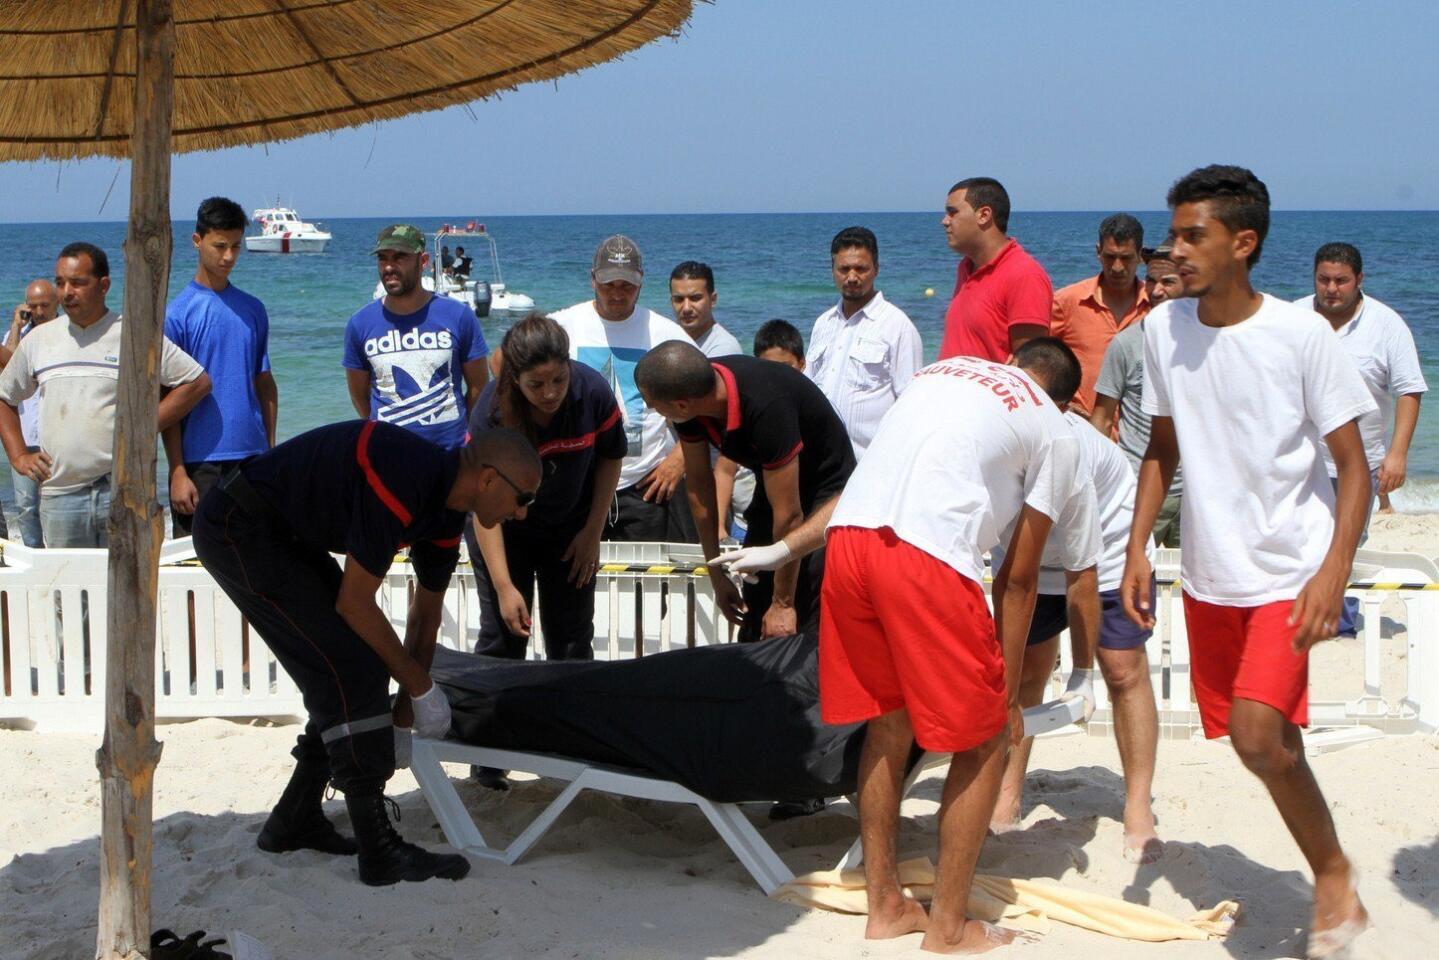 Terror attack at beach resort in Tunisia